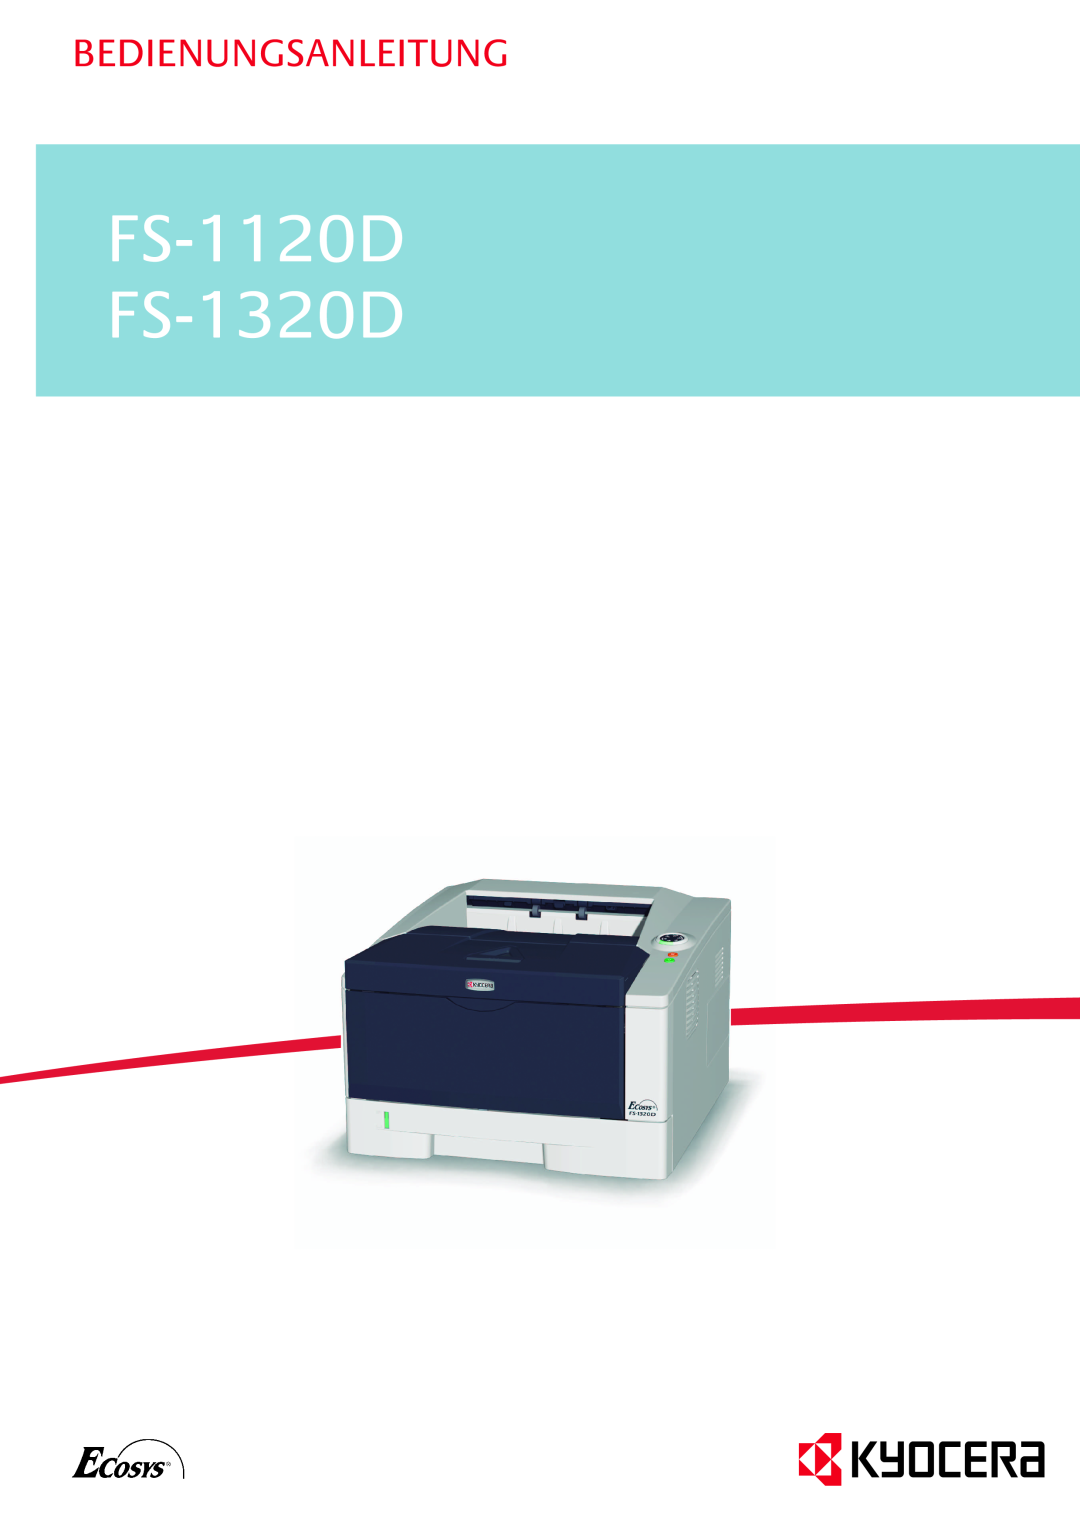 Kyocera manual FS-1120D FS-1320D, Bedienungsanleitung 